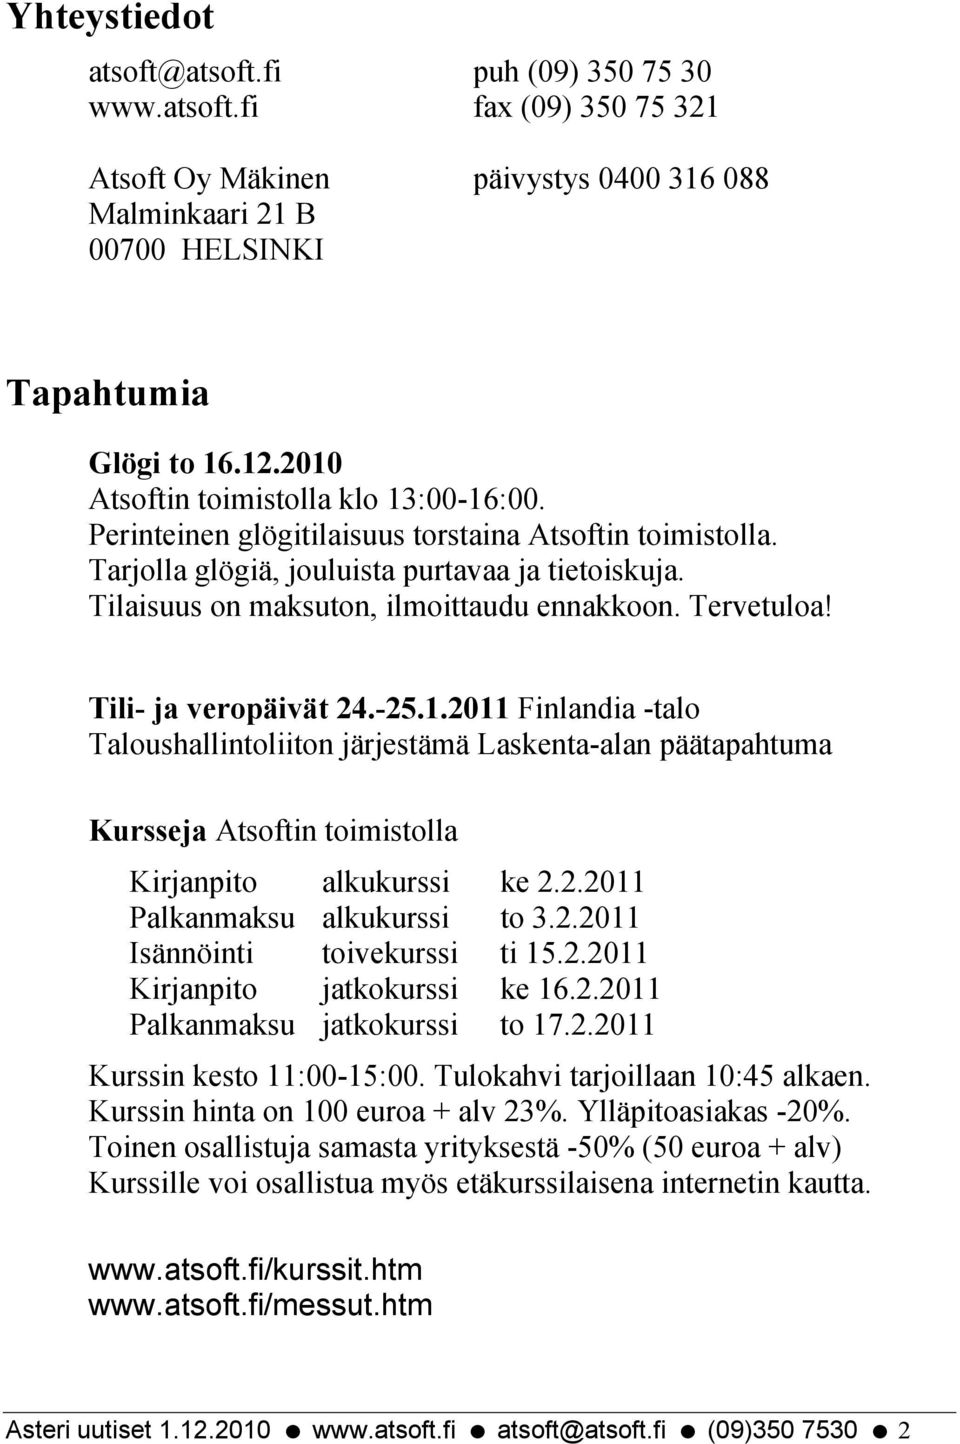 Tervetuloa! Tili- ja veropäivät 24.-25.1.2011 Finlandia -talo Taloushallintoliiton järjestämä Laskenta-alan päätapahtuma Kursseja Atsoftin toimistolla Kirjanpito alkukurssi ke 2.2.2011 Palkanmaksu alkukurssi to 3.